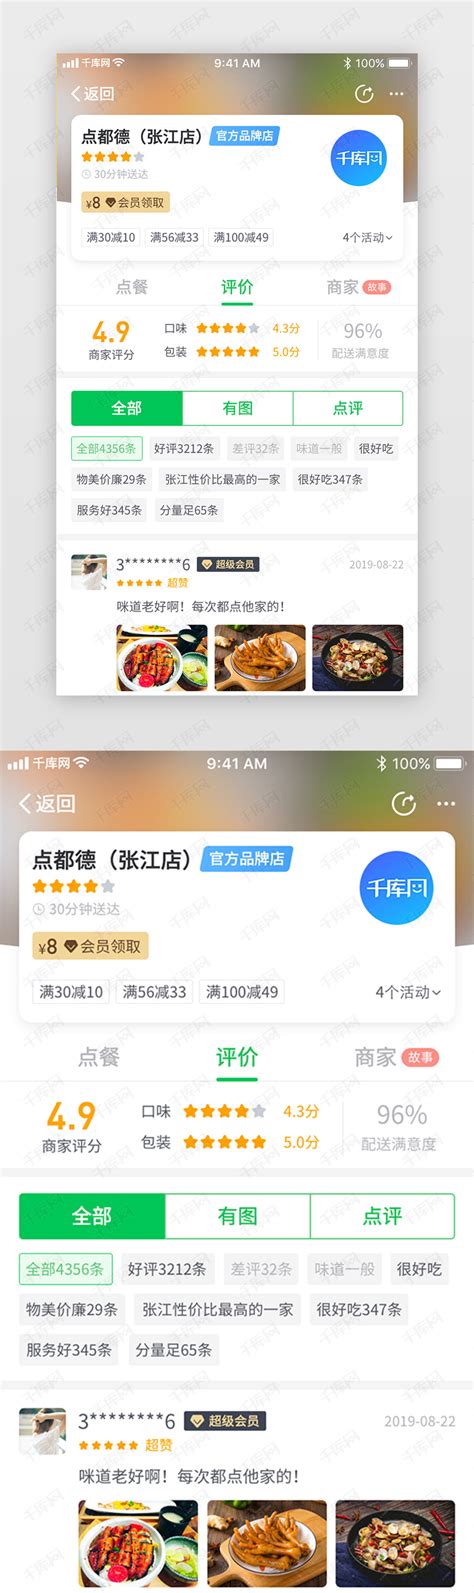 新款简约外卖餐饮商家店招美食banner促销海报PSD设计PS素材模板